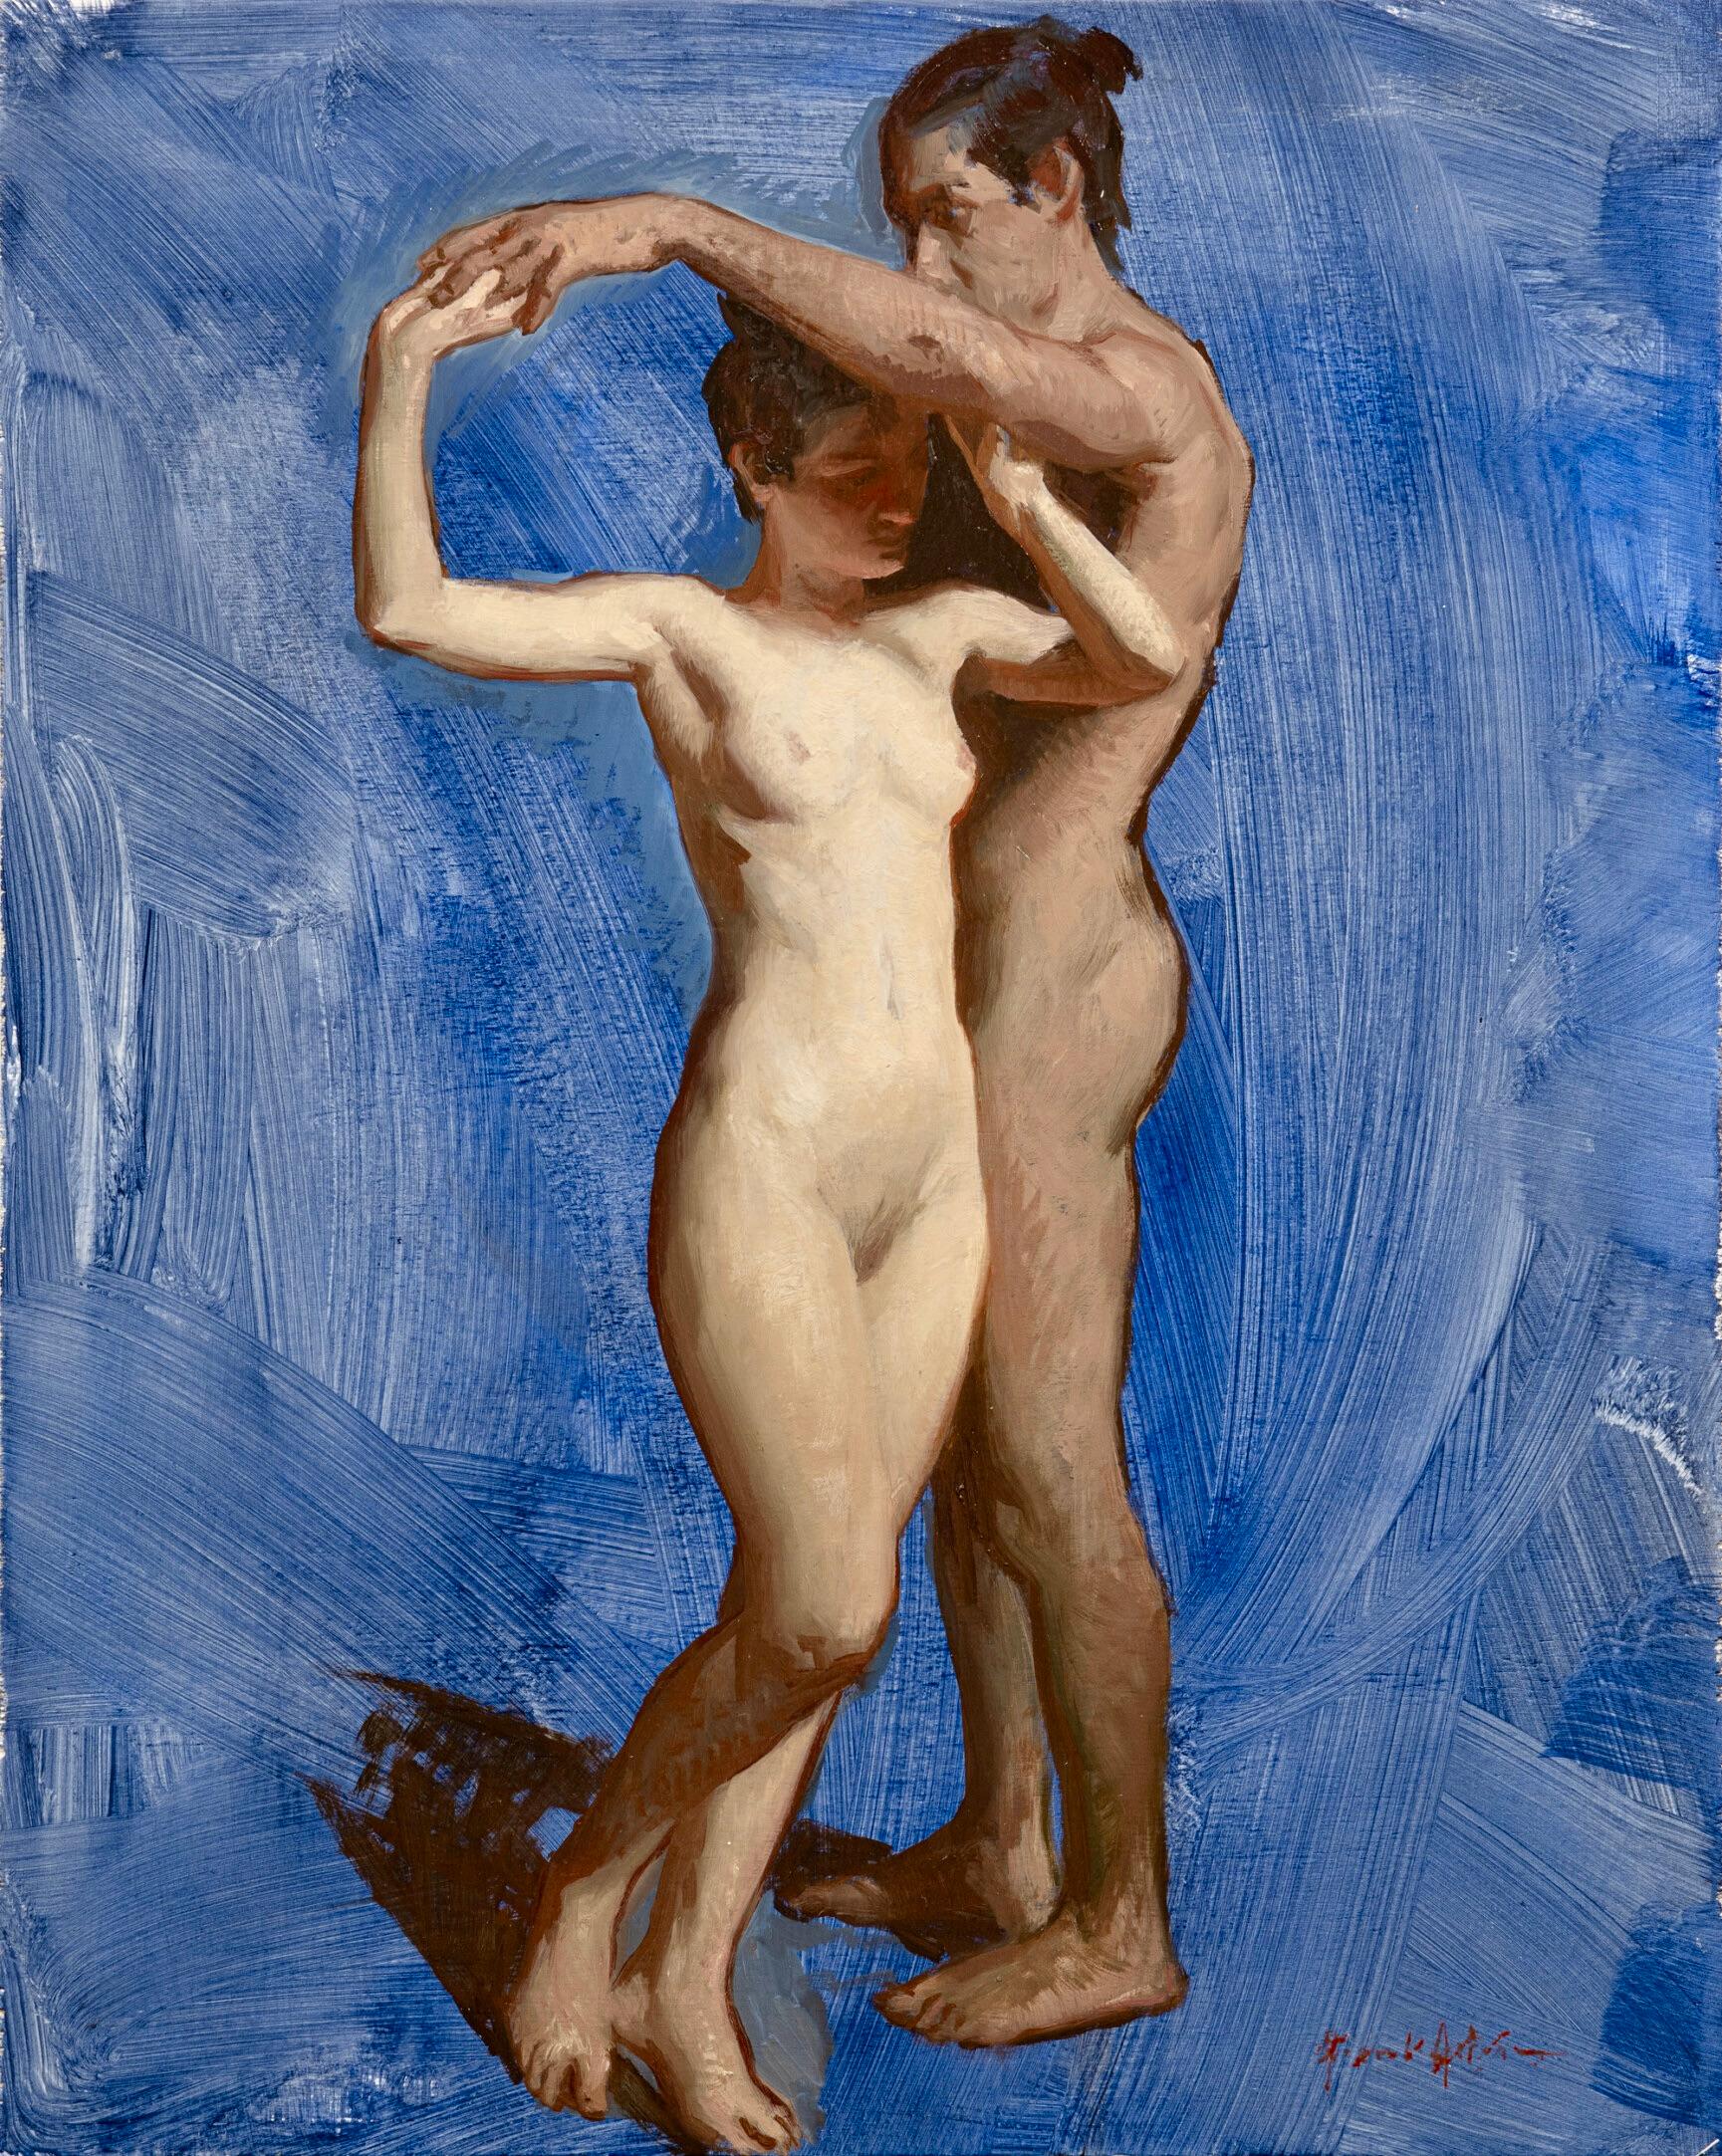 Daniela Astone Portrait Painting – Paar #2- Zeitgenössisches Gemälde des 21. Jahrhunderts mit einem tanzenden nackten Mann und einer Frau 